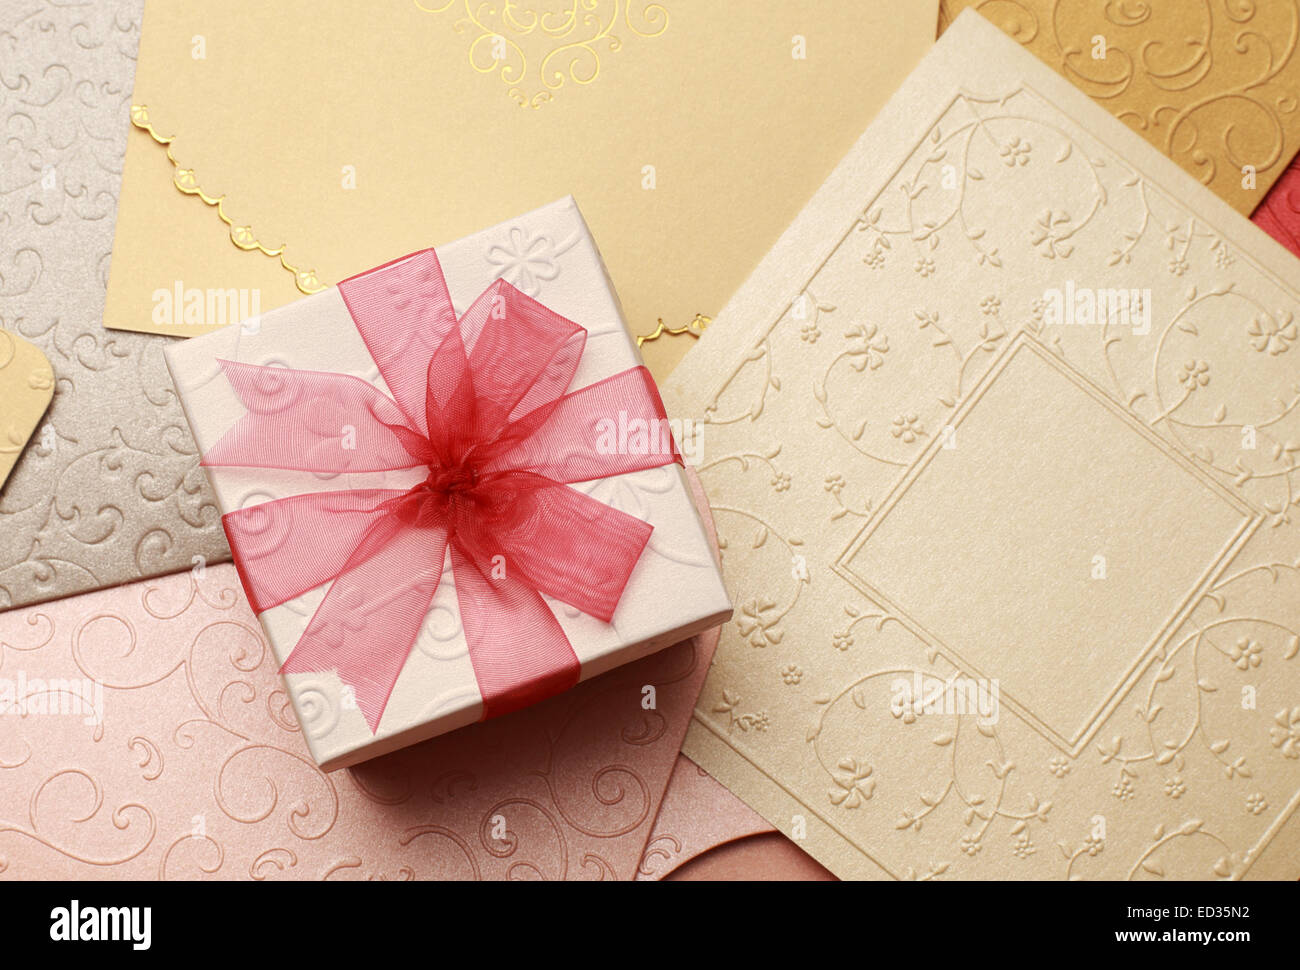 La boîte-cadeau sur carte de souhaits pour la célébration des événements Banque D'Images